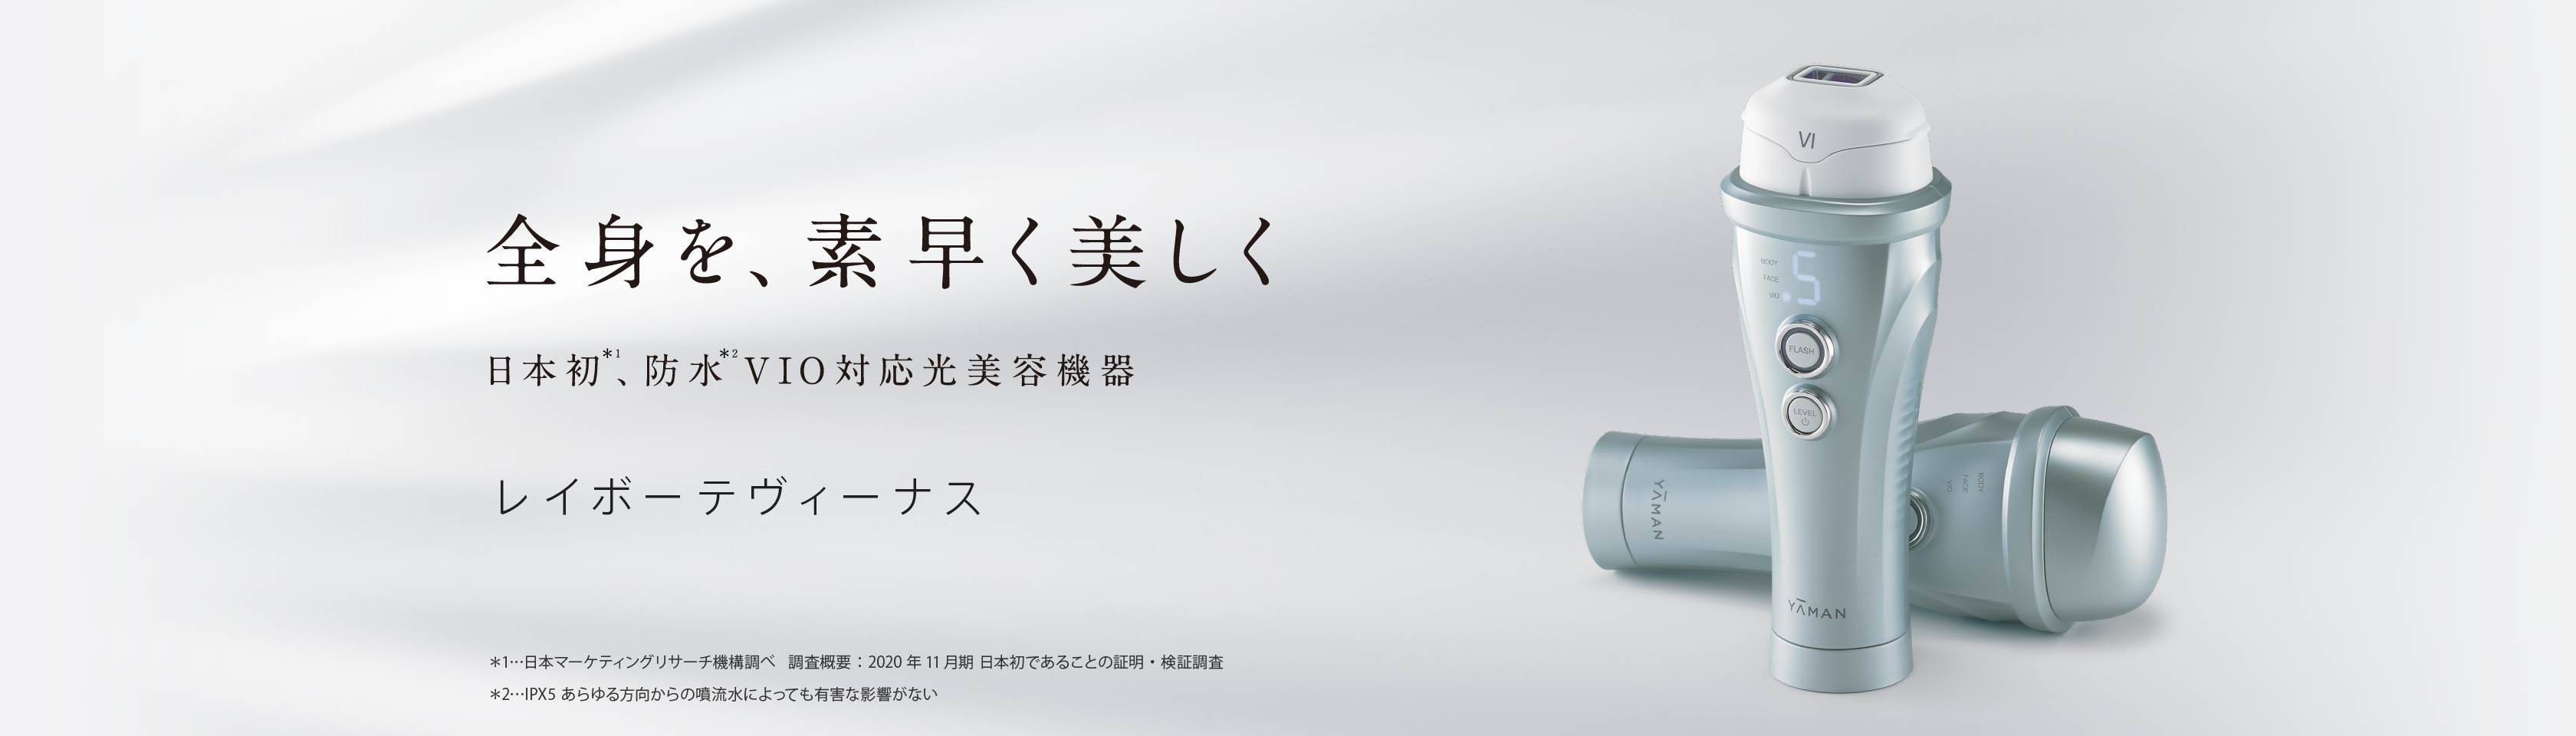 全身を、素早く美しく 日本初、防水VIO対応光美容機器